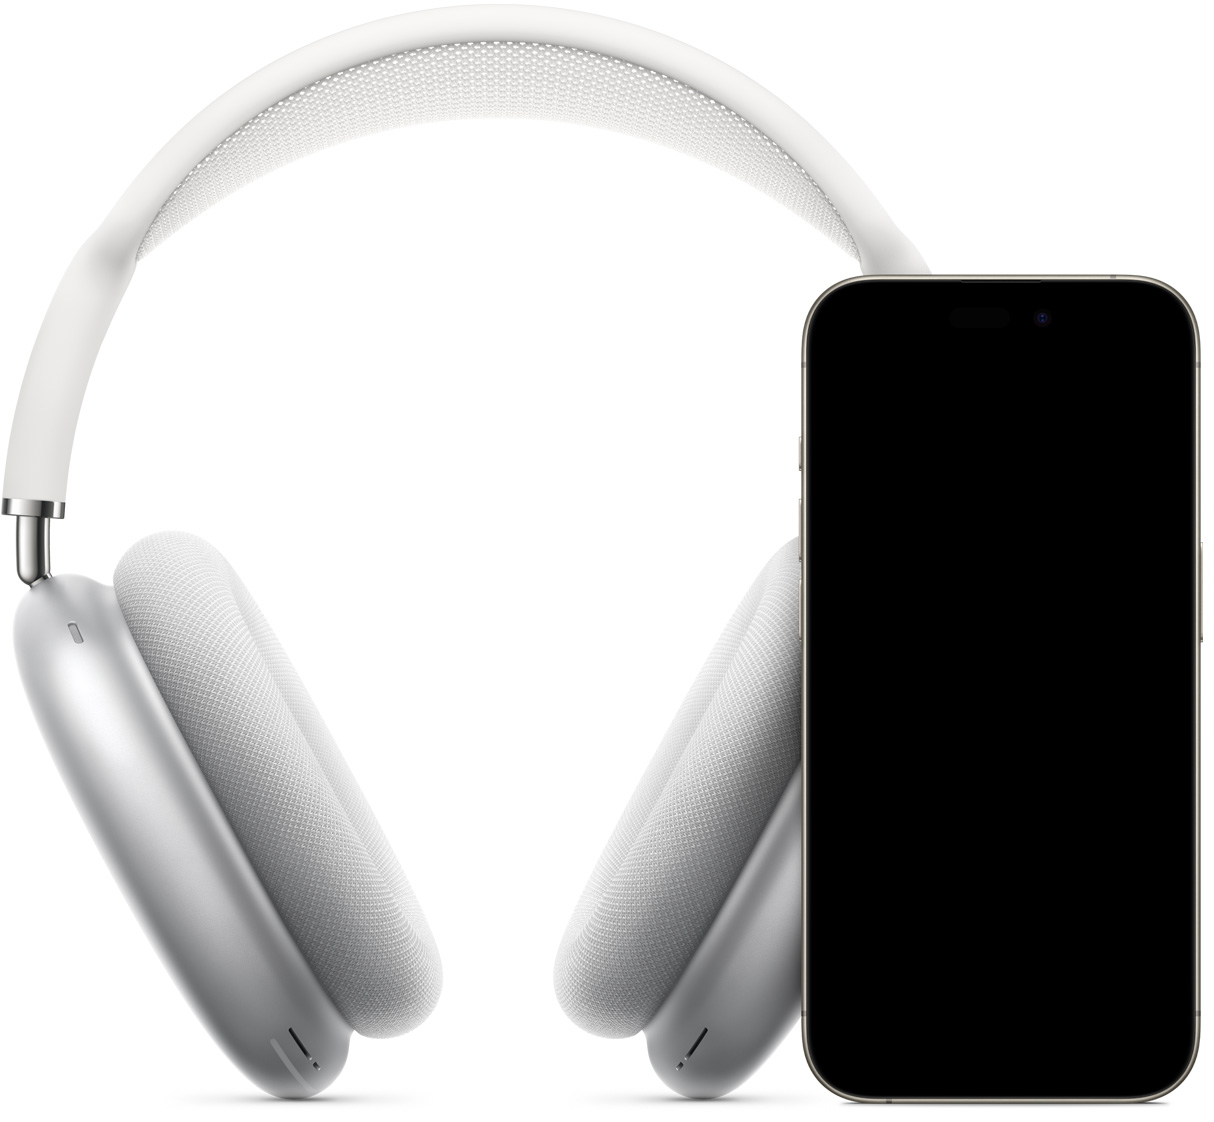 Slušalice AirPods Max u srebrnoj boji, smještene iza iPhonea na čijem se zaslonu prikazuju postavke za trenutačno podešavanje uređaja. Na zaslonu je prikazan gumb Connect, dodirivanjem kojeg je moguće upariti slušalice AiprPods Max i iPhone.